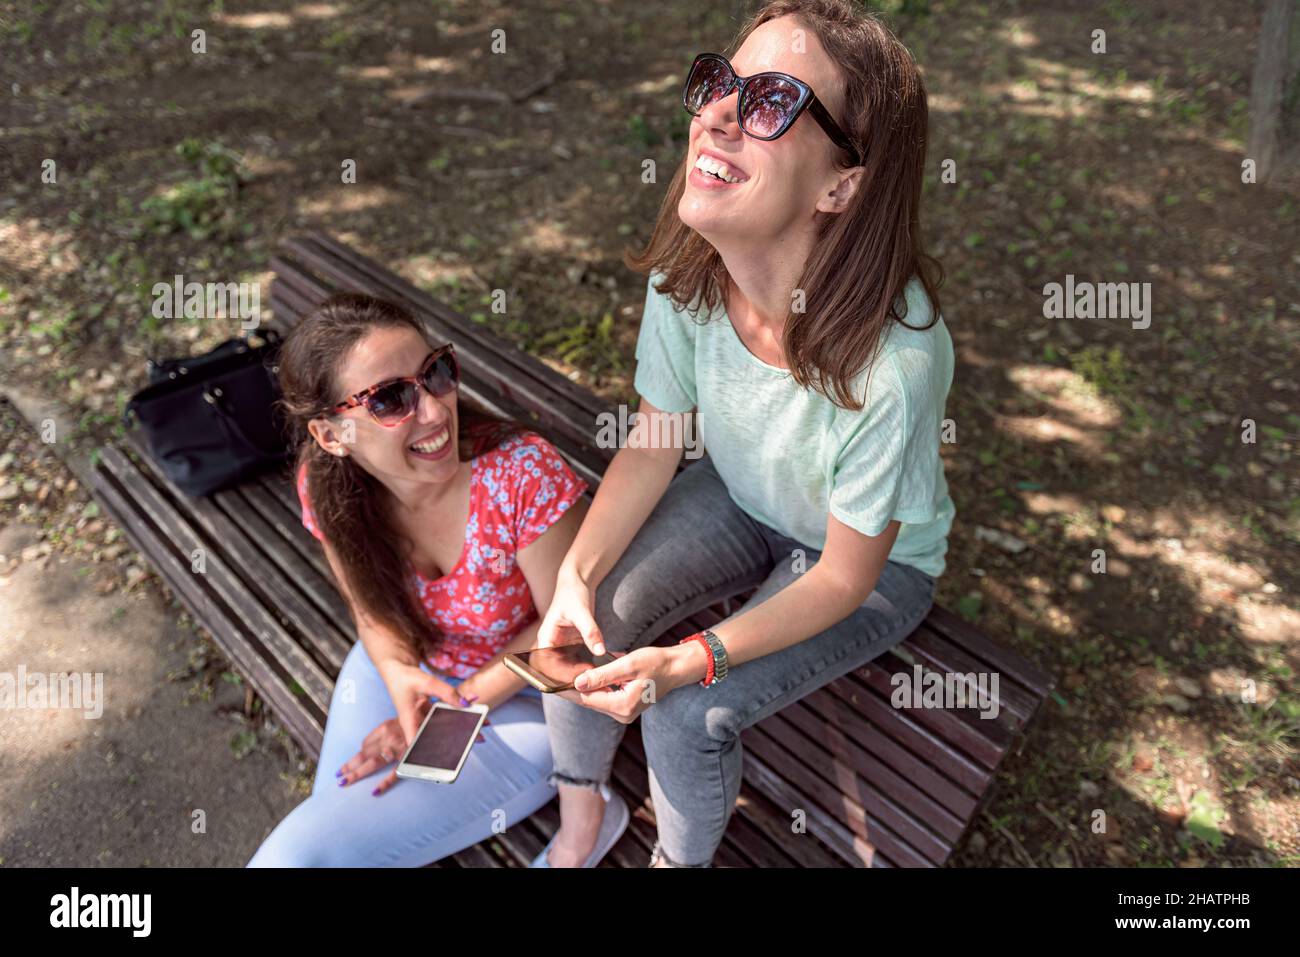 Zwei Personen sitzen zusammen mit Spaß im Freien Konzept der modernen Frauen Freundschaft Lifestyle weiblich beste Freunde glücklich Mädchen reisen im Urlaub oder sp Stockfoto